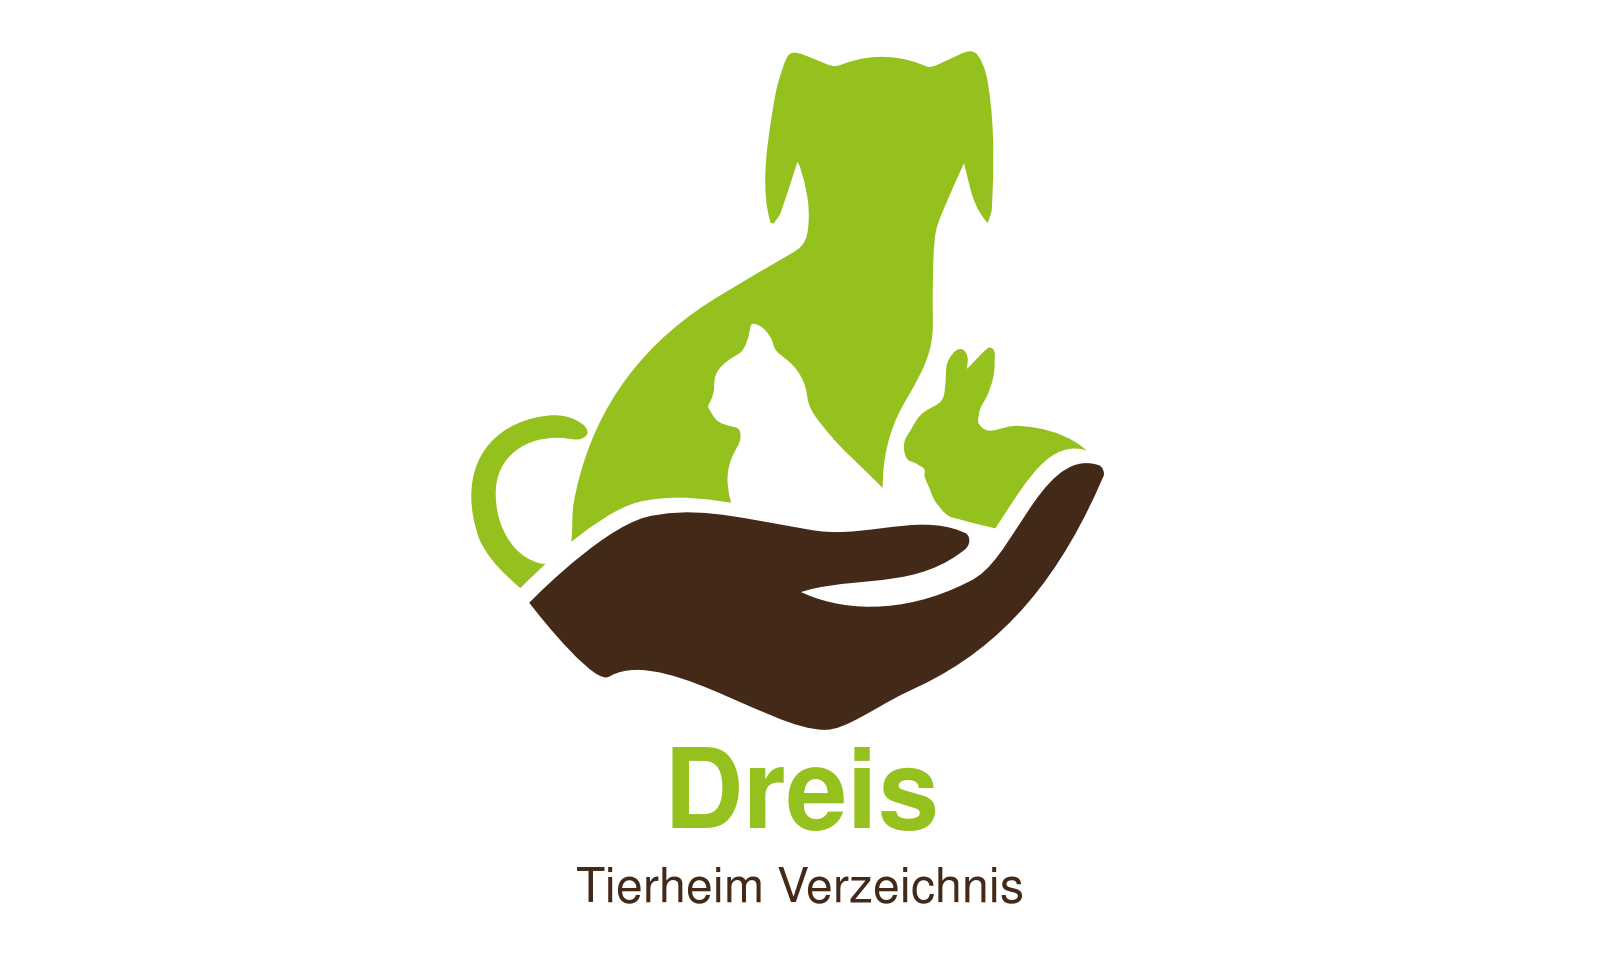 Tierheim Dreis